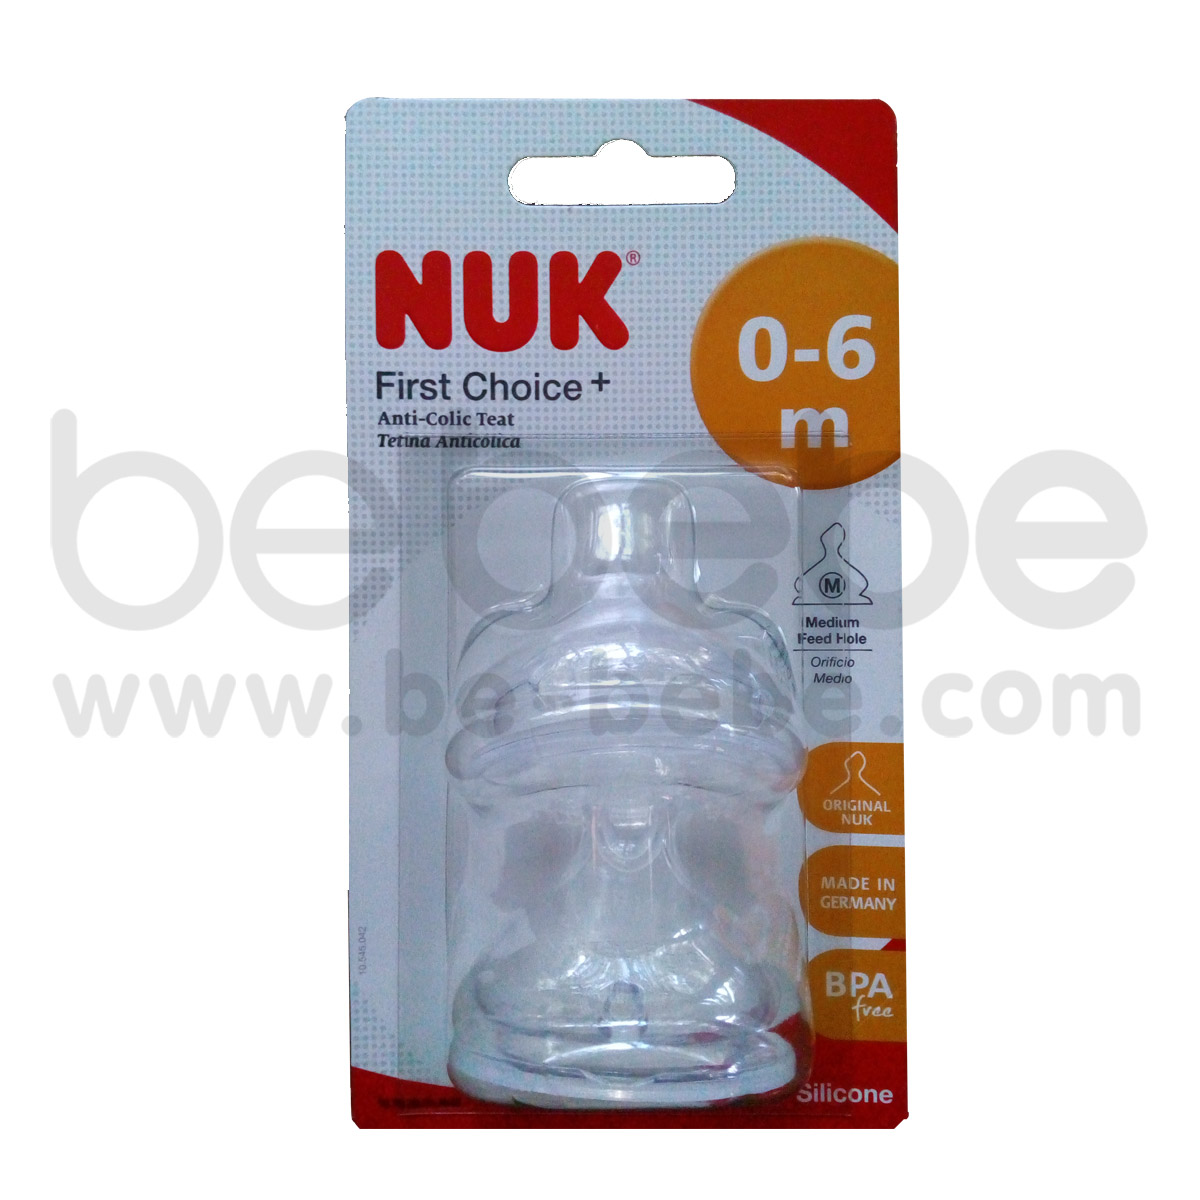 NUK:จุกนม FC Plus S1 (M) 0-6 m.